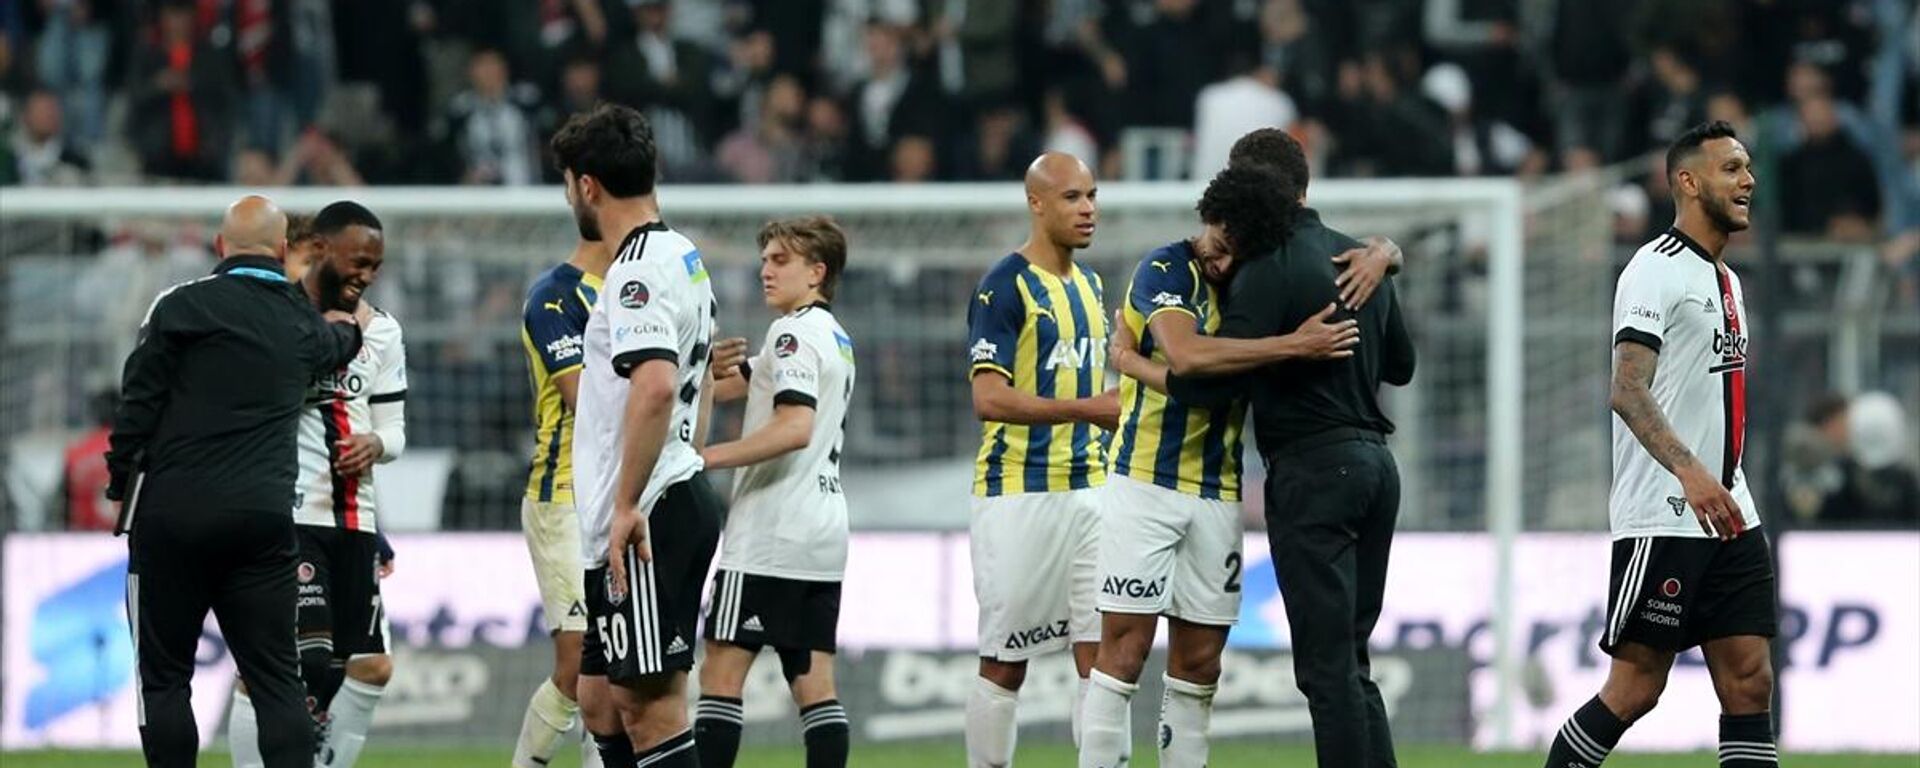 Spor Toto Süper Lig'in 36. haftasında Beşiktaş ile Fenerbahçe takımları, Vodafone Park'ta karşılaştı. 1-1 biten maçın ardından her iki takım oyuncuları da birbirlerini tebrik etti. - Sputnik Türkiye, 1920, 08.05.2022